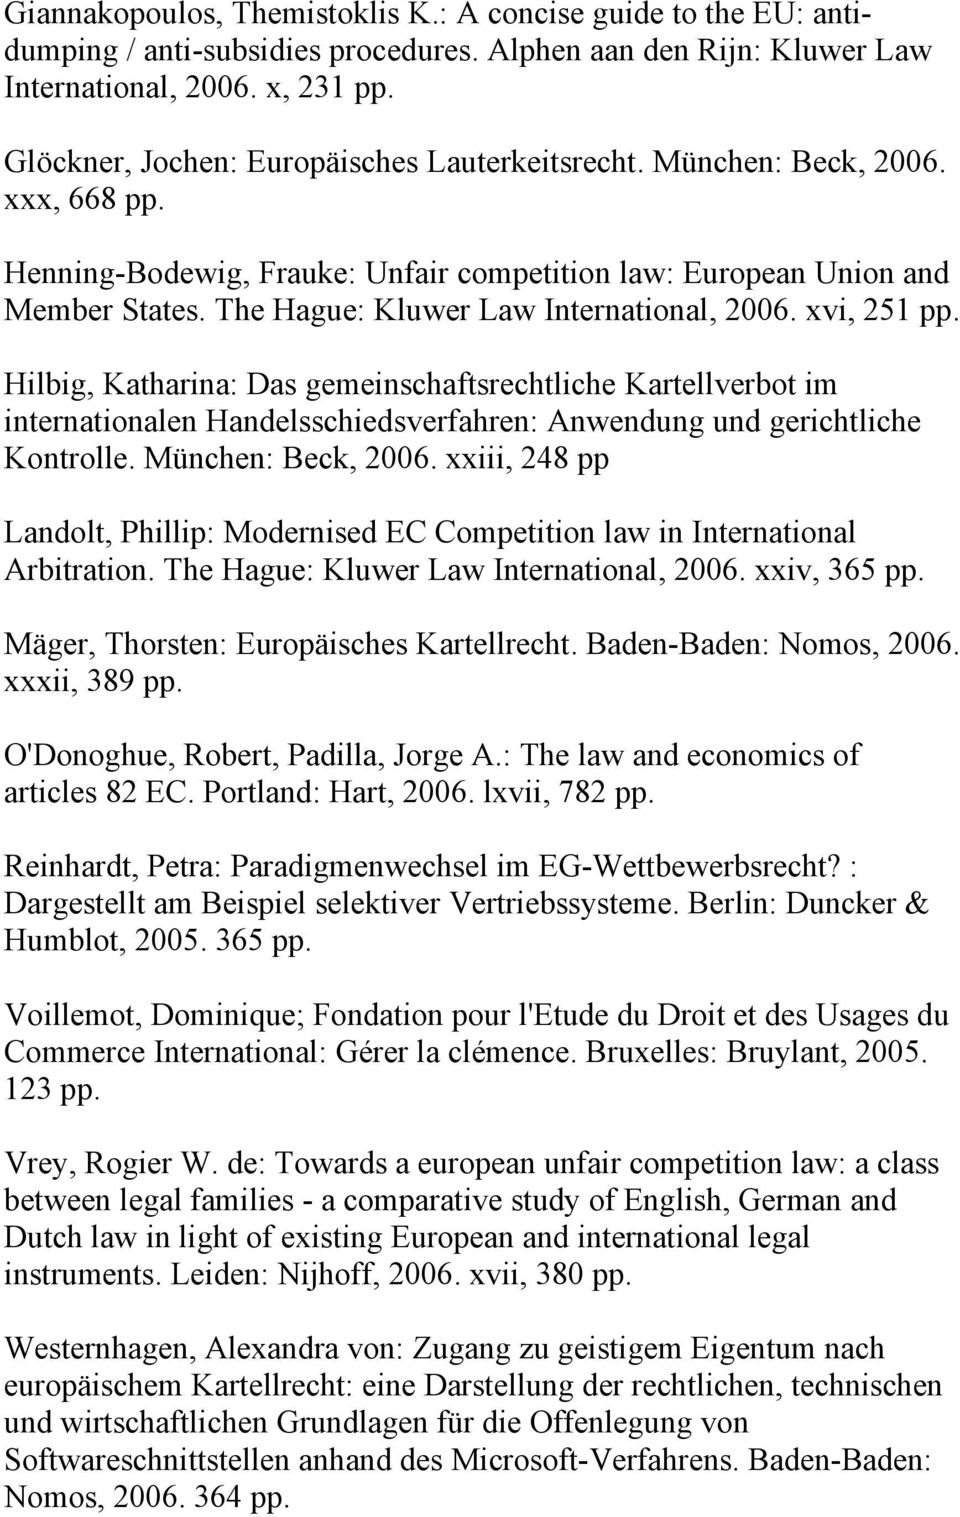 The Hague: Kluwer Law International, 2006. xvi, 251 pp. Hilbig, Katharina: Das gemeinschaftsrechtliche Kartellverbot im internationalen Handelsschiedsverfahren: Anwendung und gerichtliche Kontrolle.